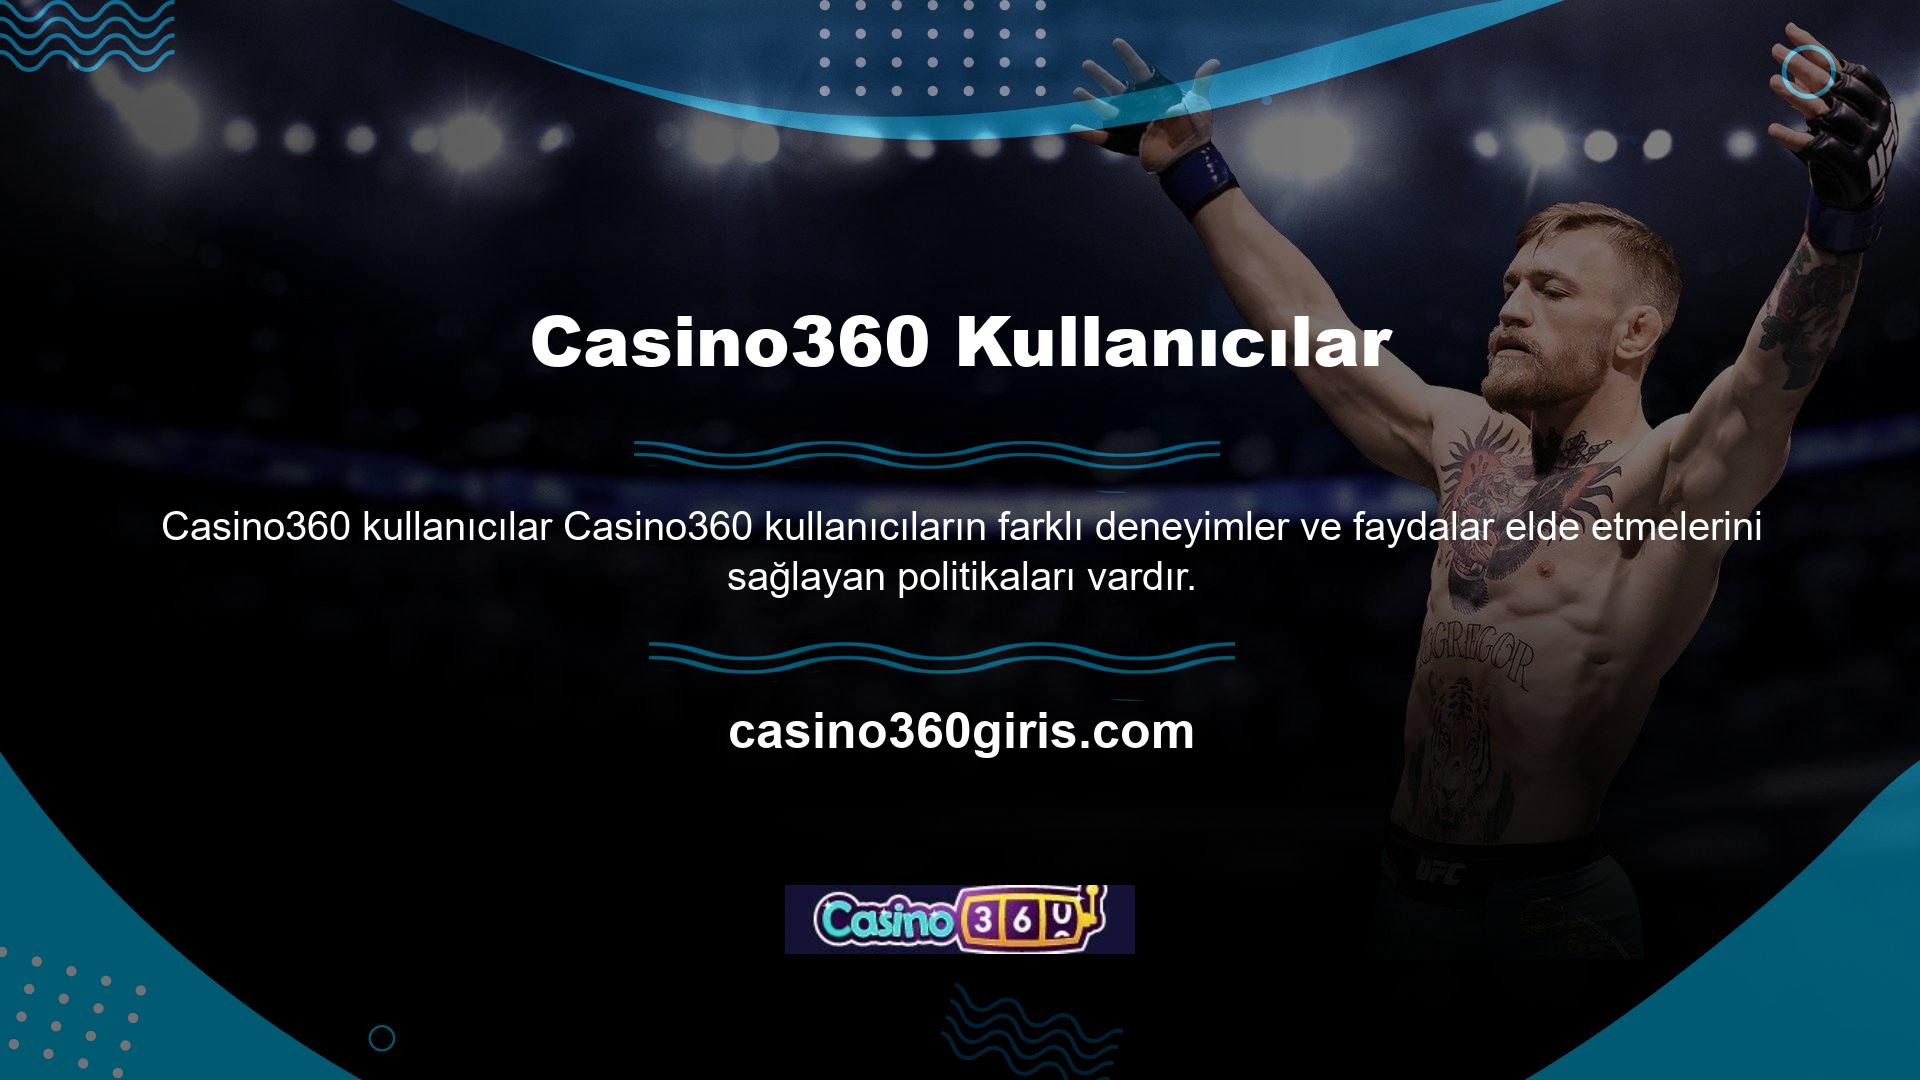 Casino360 ayrıca giriş adresinizi ve bağlantınızı kullanarak eski güncel bakiyeleri, kazançları, bonusları ve tüm geçmiş işlemleri arama olanağı da sunar